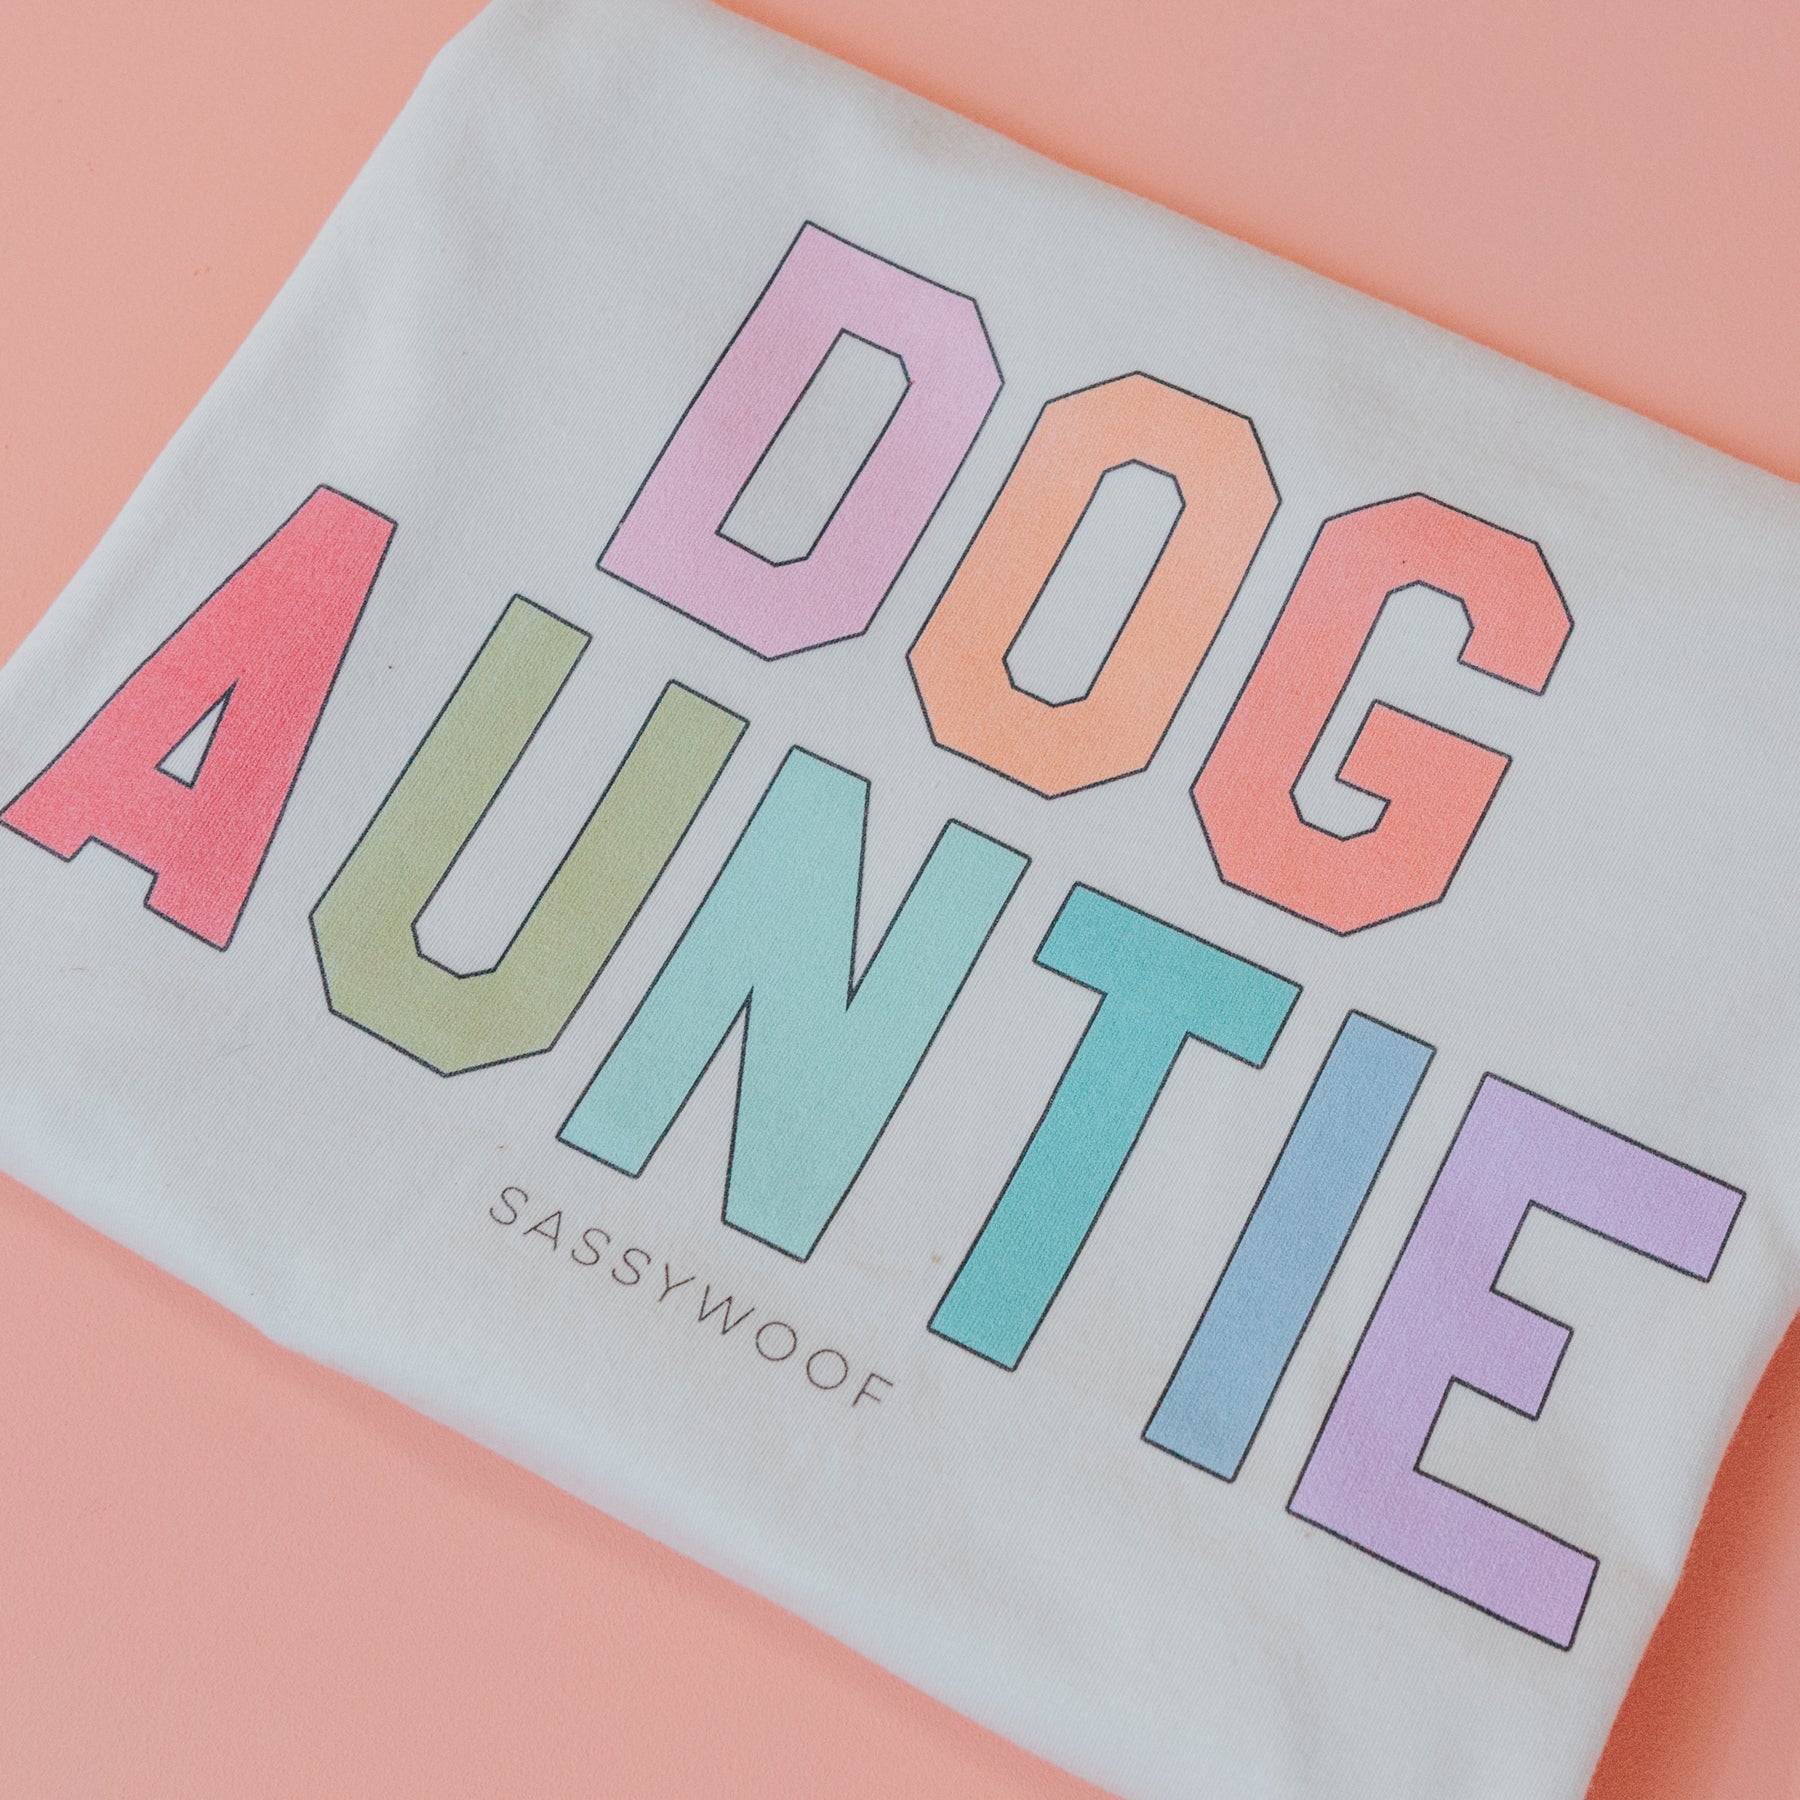 Family Tee - Dog Auntie